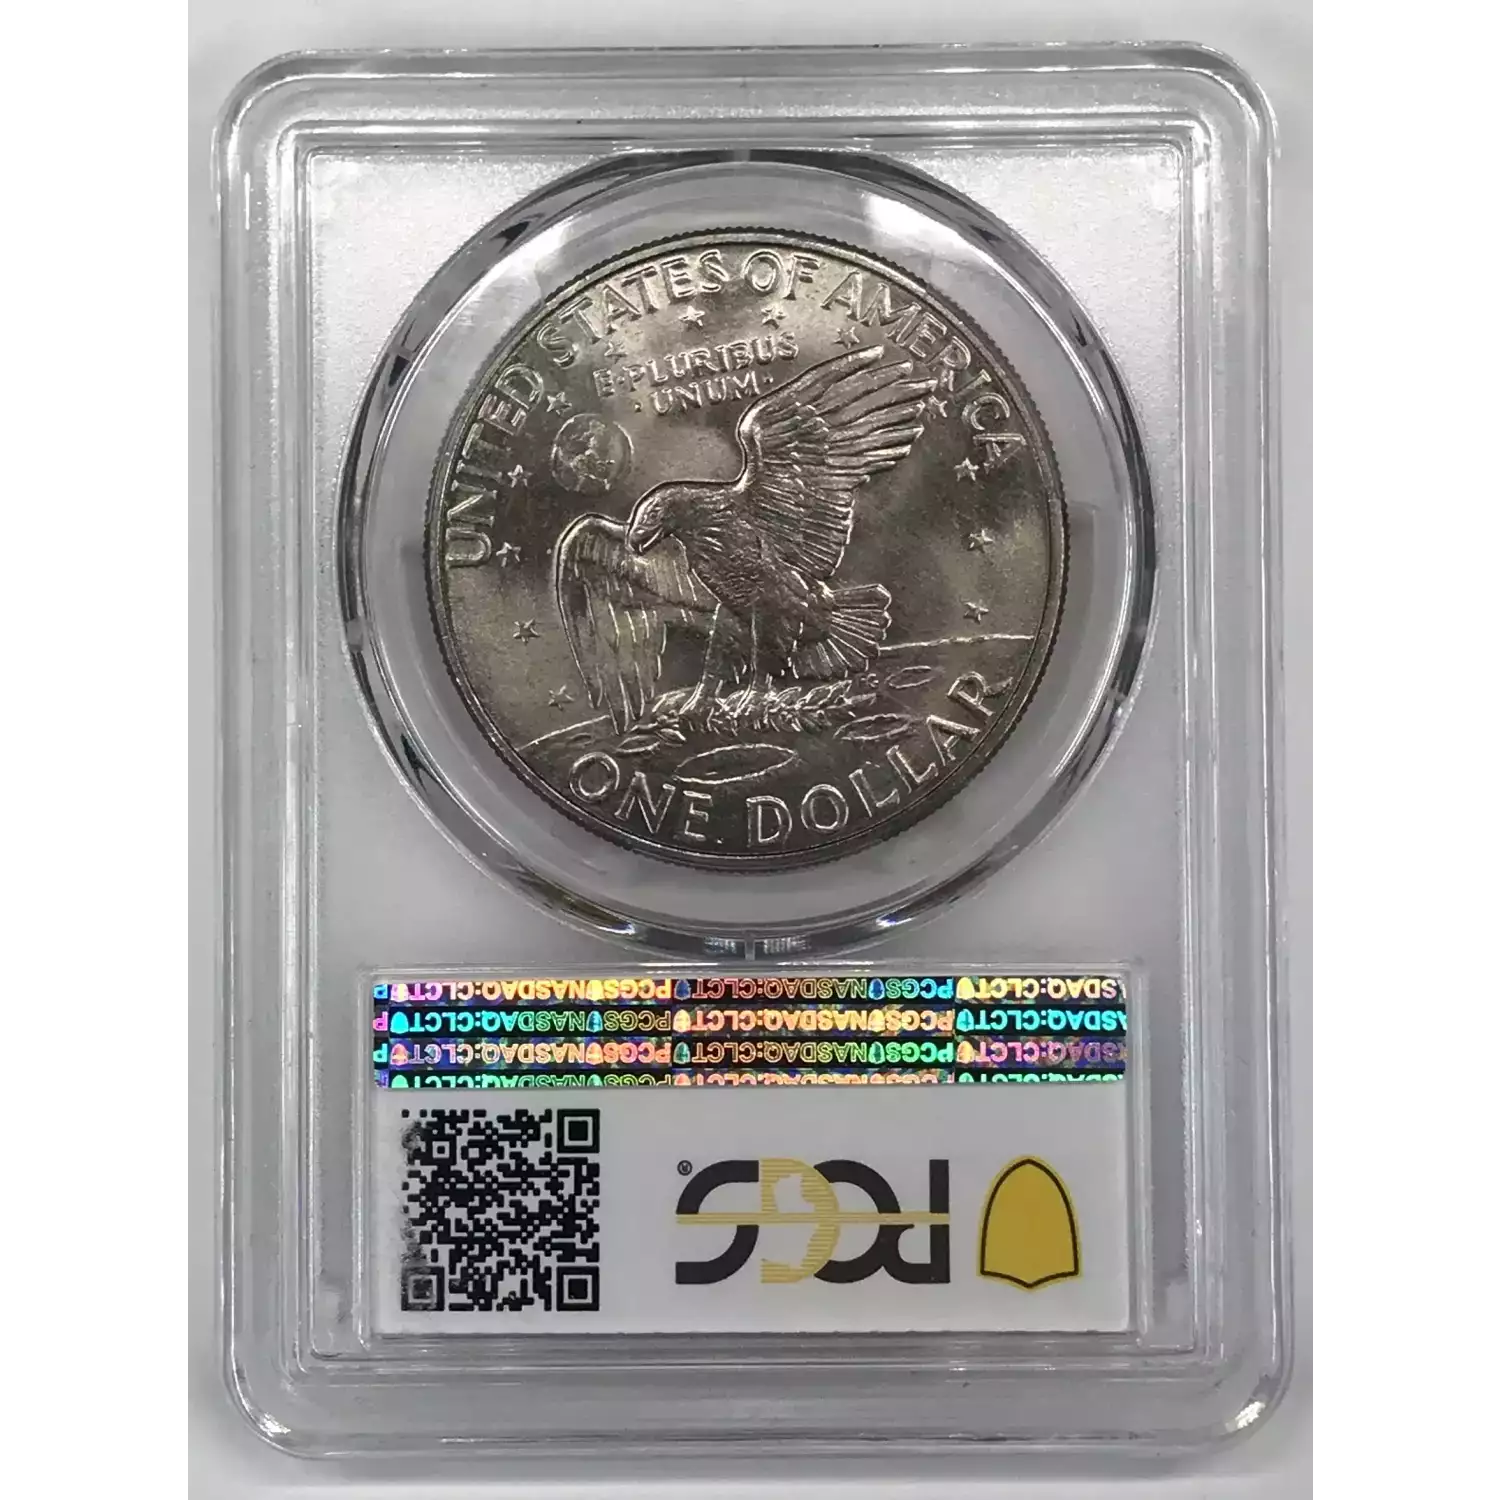 1972-D $1